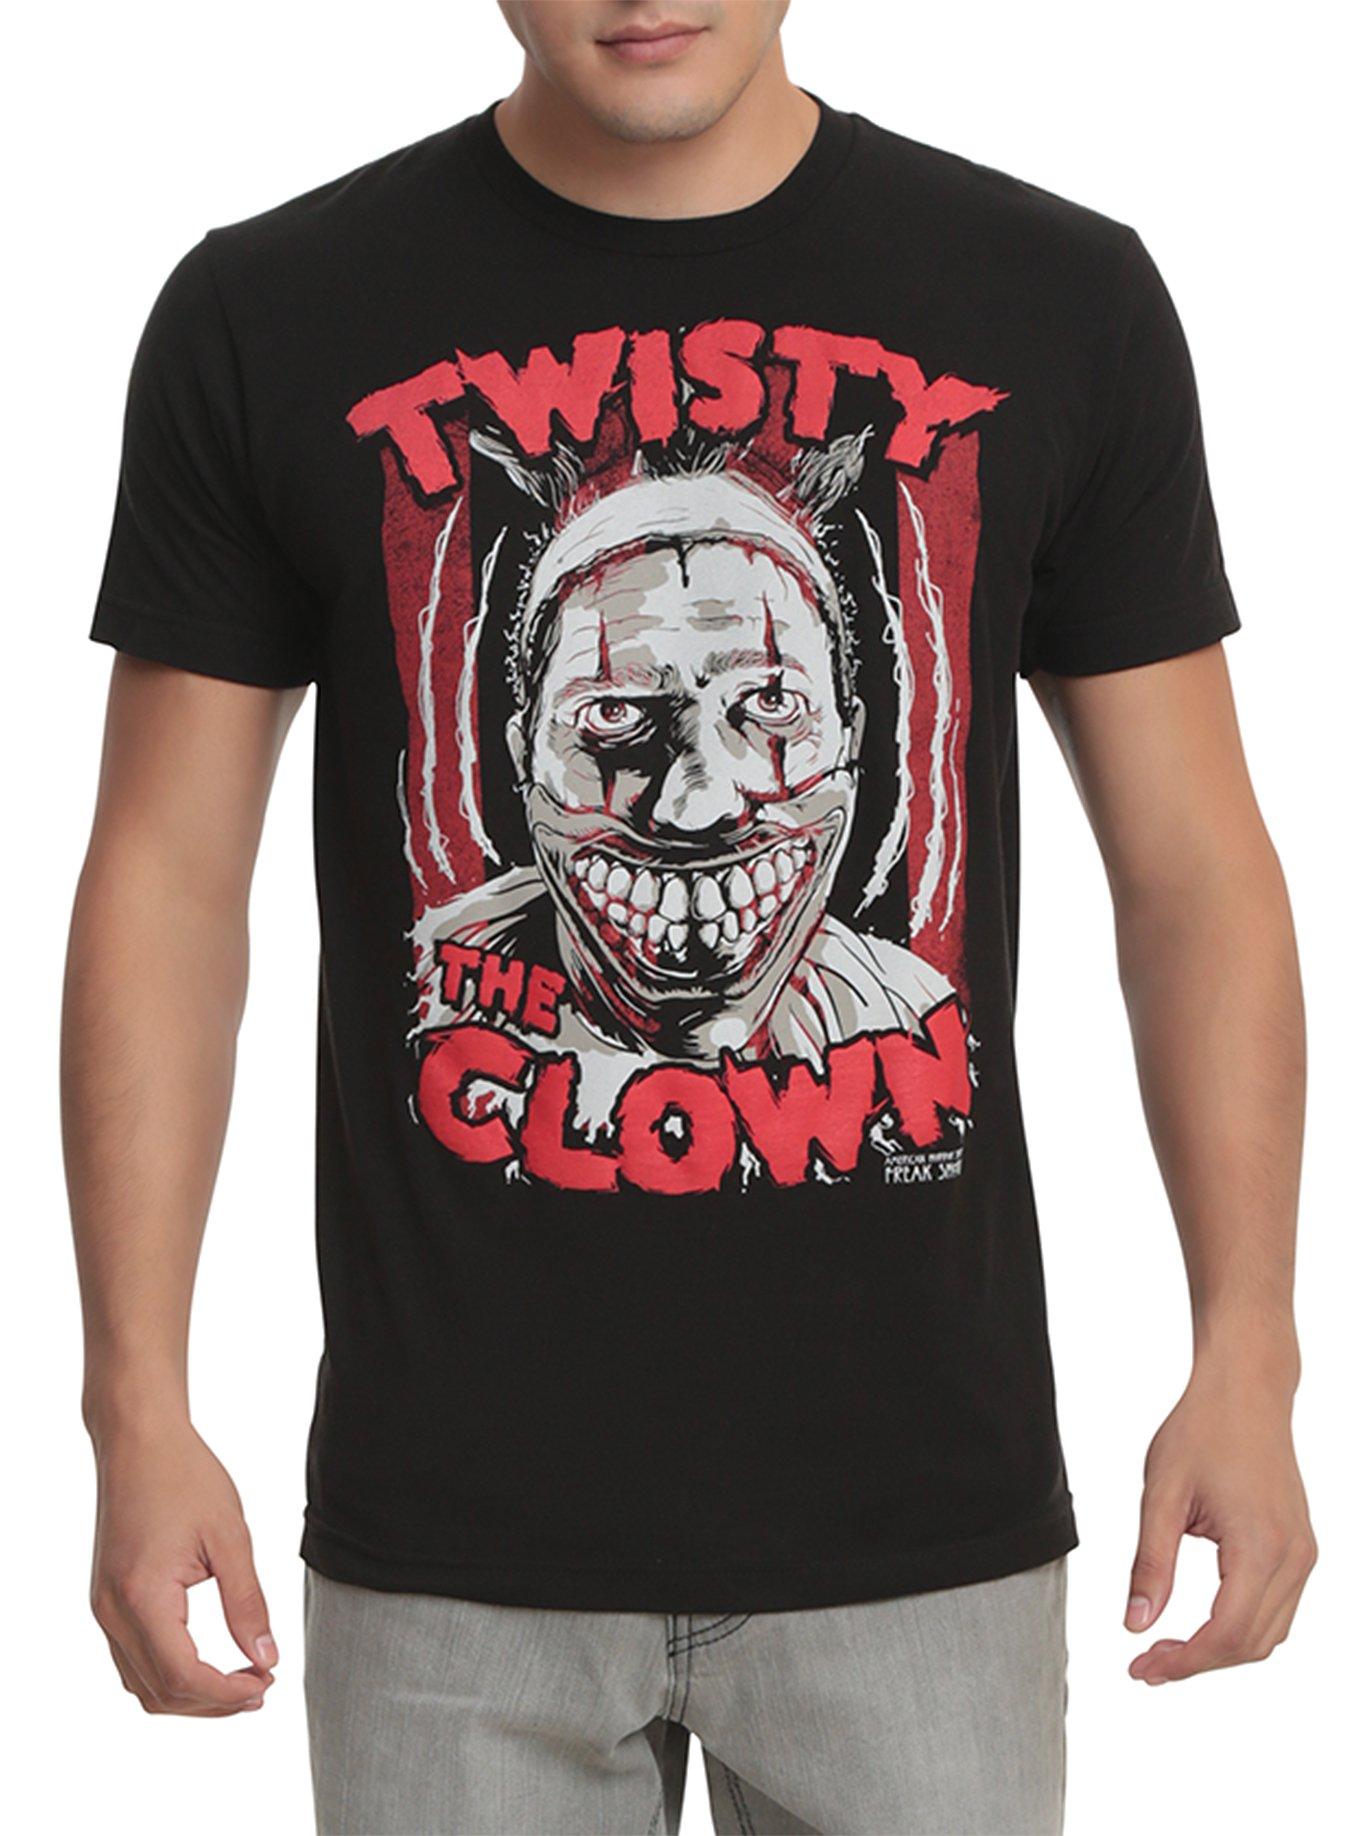 Twisted Types Tank Tops Vest 100% Cotton Twisty Clown Freak Show